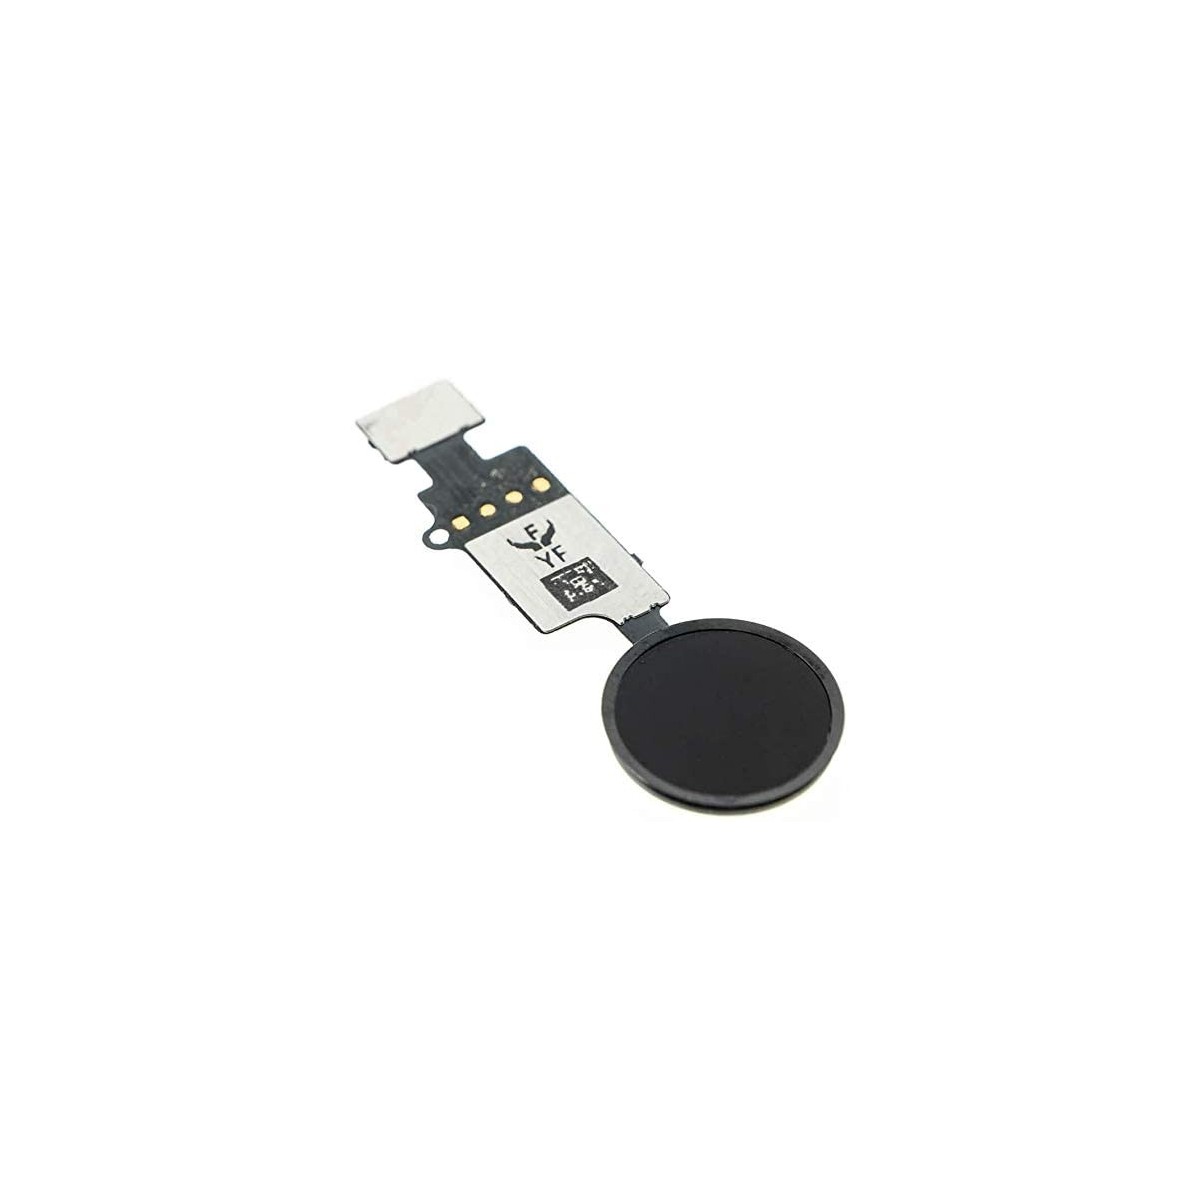 Bouton Home Fonctionnel avec Nappe Flex Compatible avec iPhone 7 Noir Home Button de Rechange